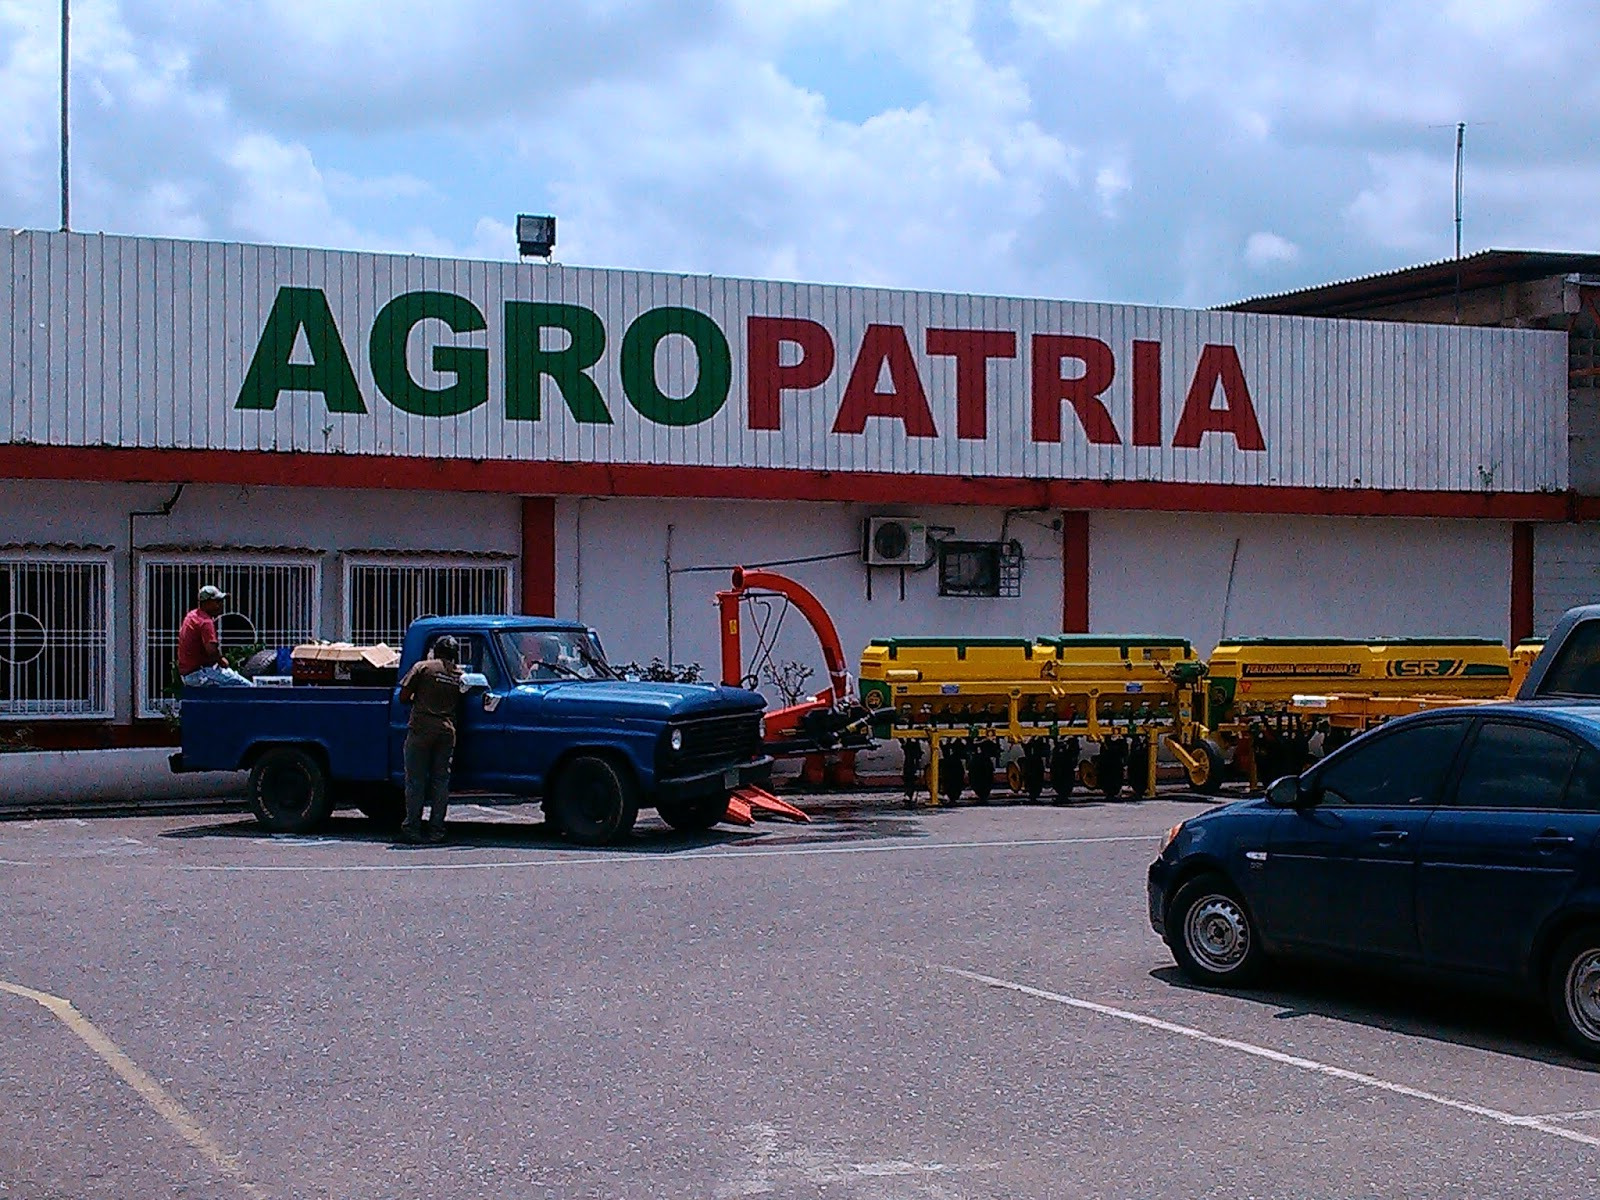 Extraoficial: Notificaron a los trabajadores de Agropatria que tienen nuevo patrono